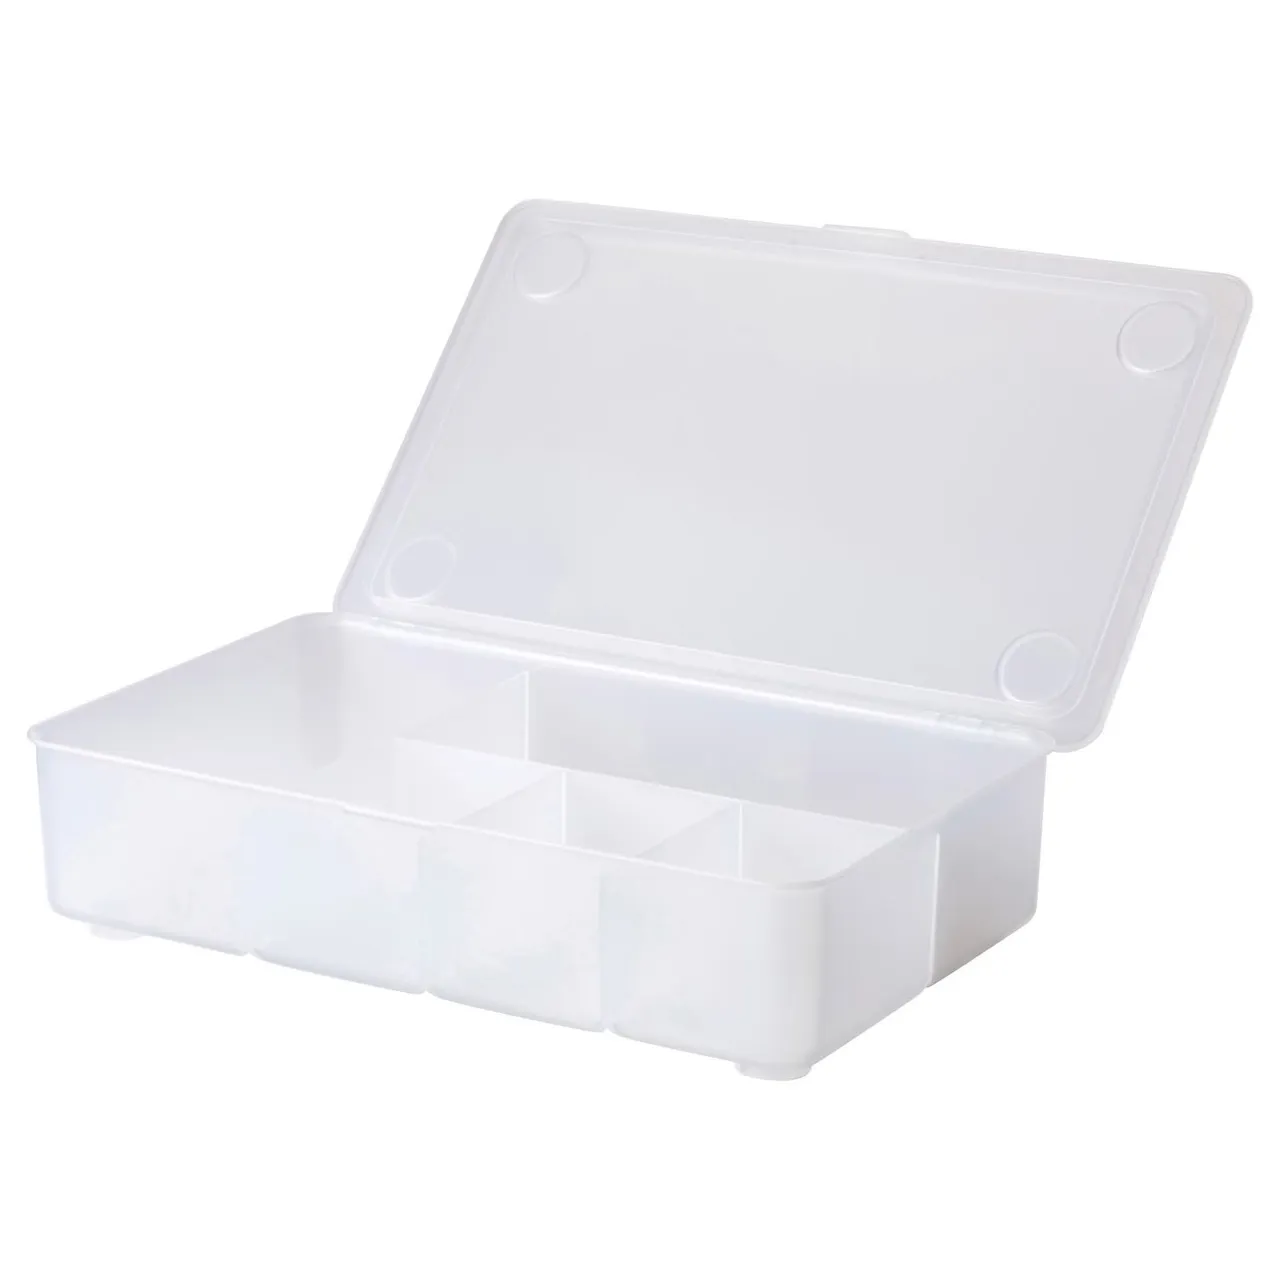 Ikea Organization Box photo 1